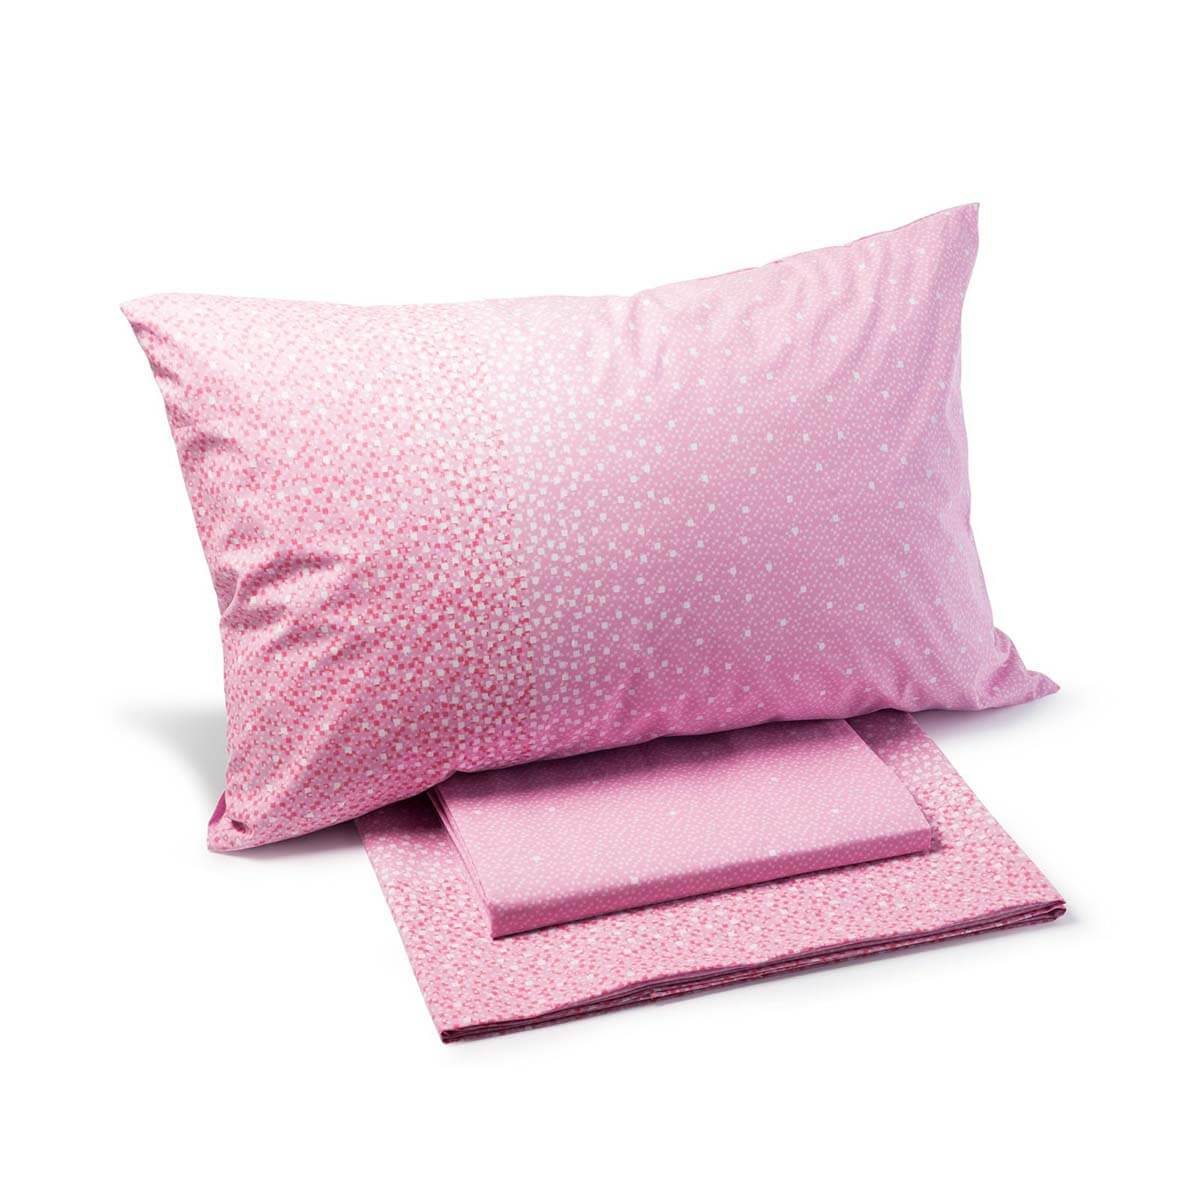 Completo lenzuola Caleffi Quadretti in puro cotone per letto singolo e da una piazza e mezza. Fantasia moderna colore rosa.